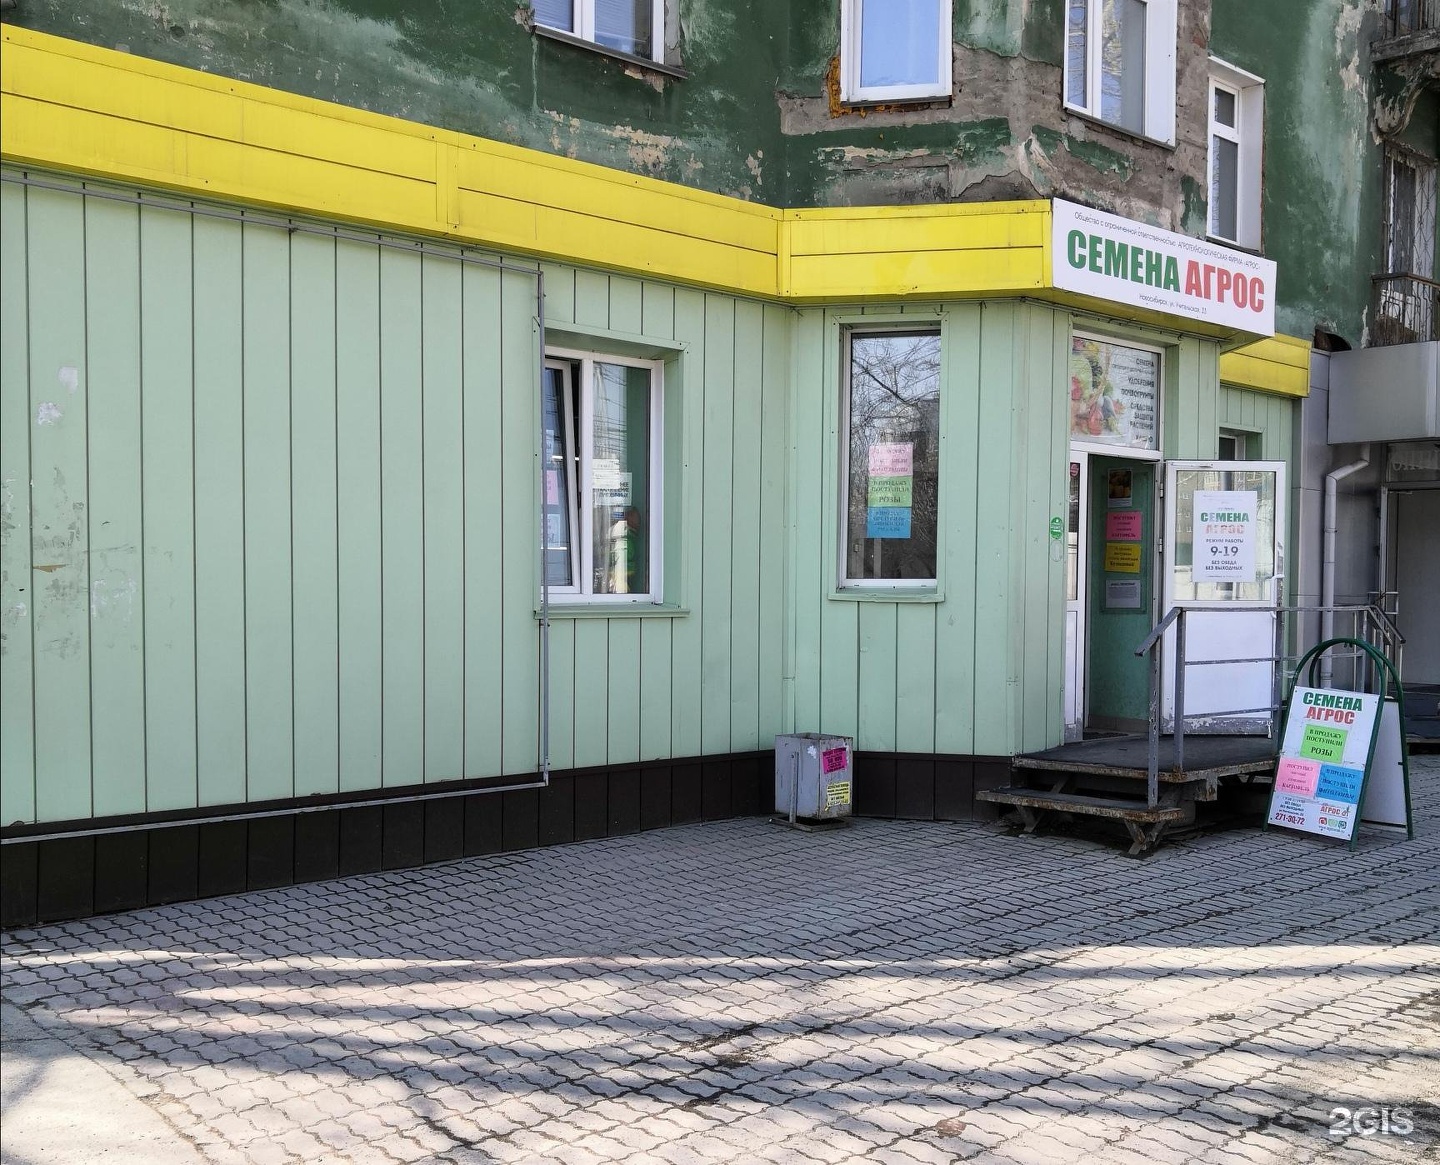 Магазин Агрос в Новосибирске. Семена Агрос Новосибирск. Агрос магазины в Новосибирске адреса. Магазин Агрос в Новокузнецке.